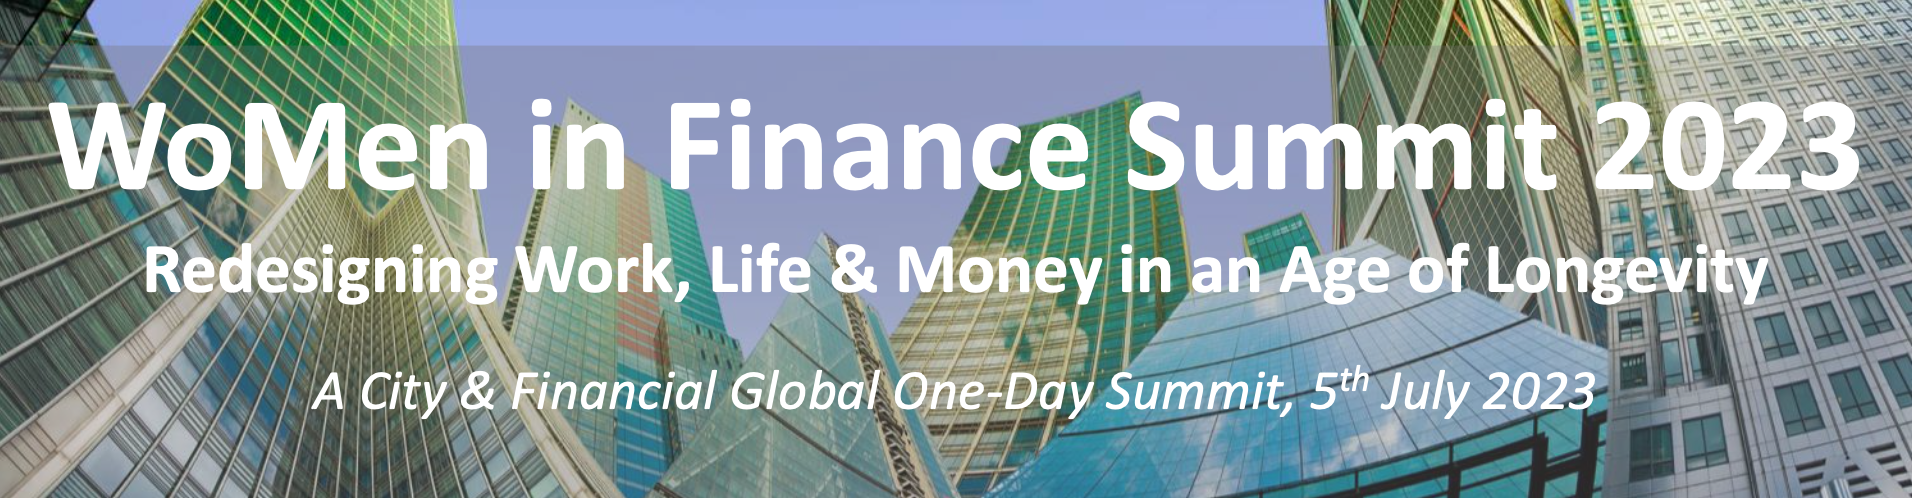 WoMen in Finance Summit 2023